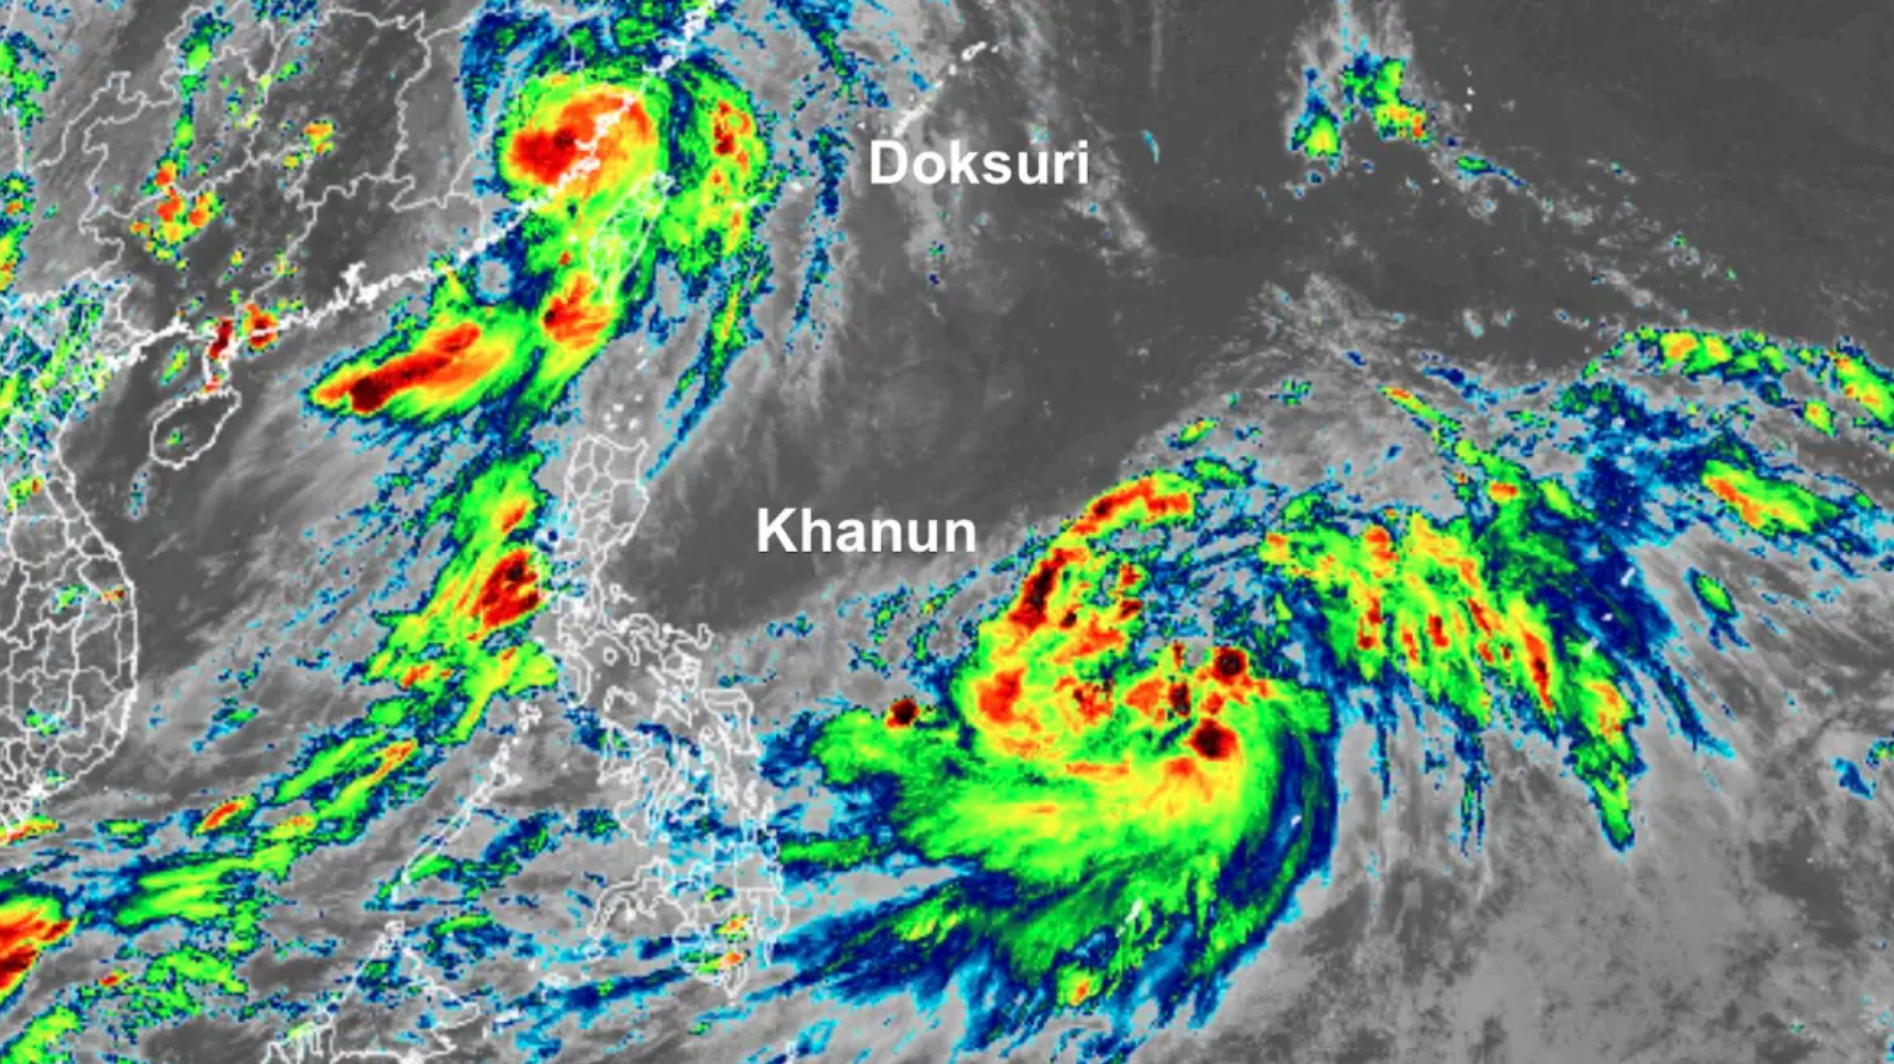 Hình ảnh vệ tinh hồng ngoại của bão Doksuri (trên cùng bên trái) và bão Khanun (dưới cùng bên phải) lúc 12h54 ngày 28.7.2023, khoảng ba giờ sau khi Doksuri đổ bộ vào bờ biển phía đông nam Trung Quốc. Ảnh: RAMMB/CIRA/CSU